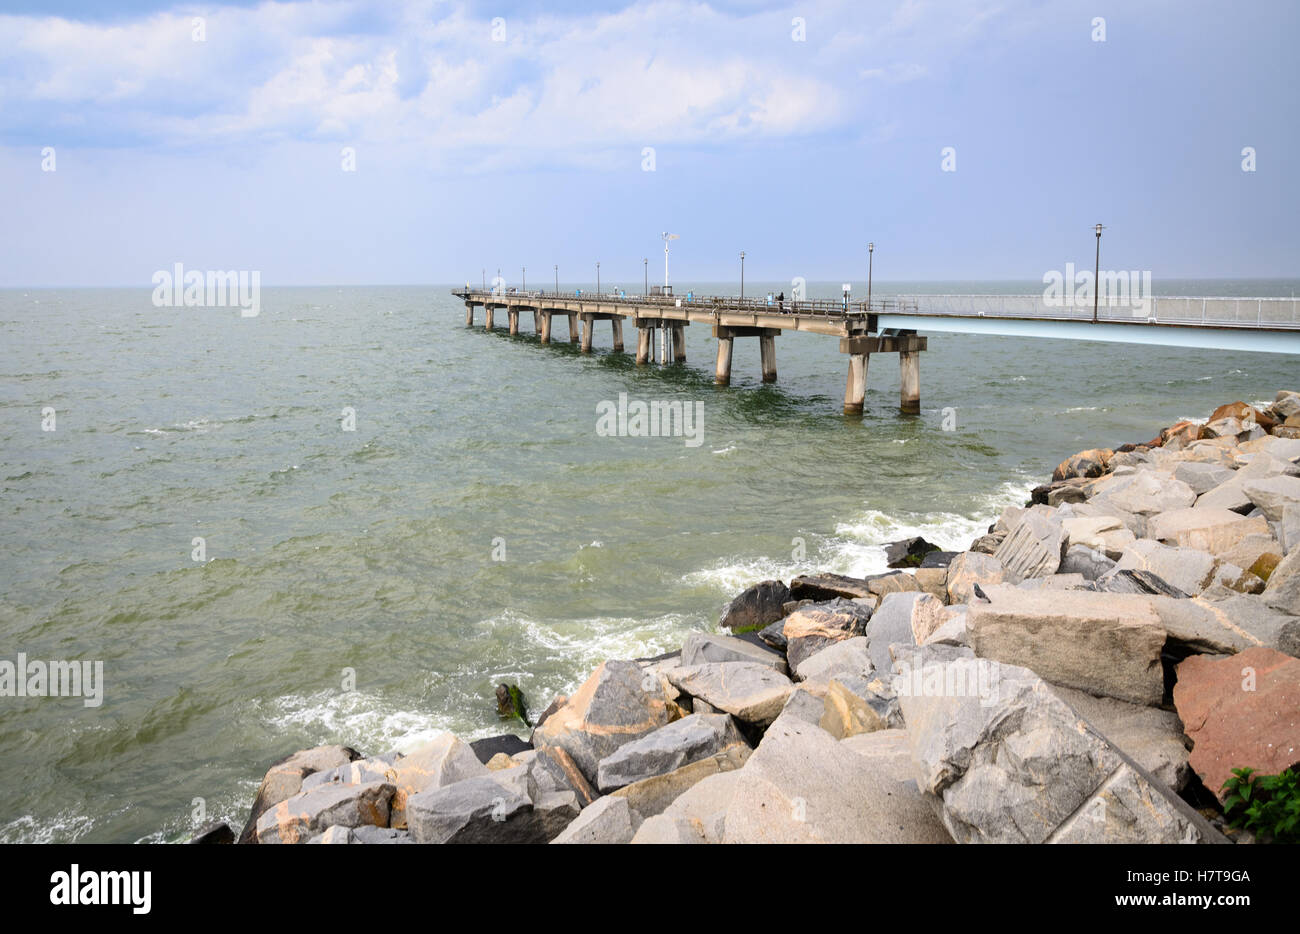 Chesapeake Bay Bridge Stock Photo